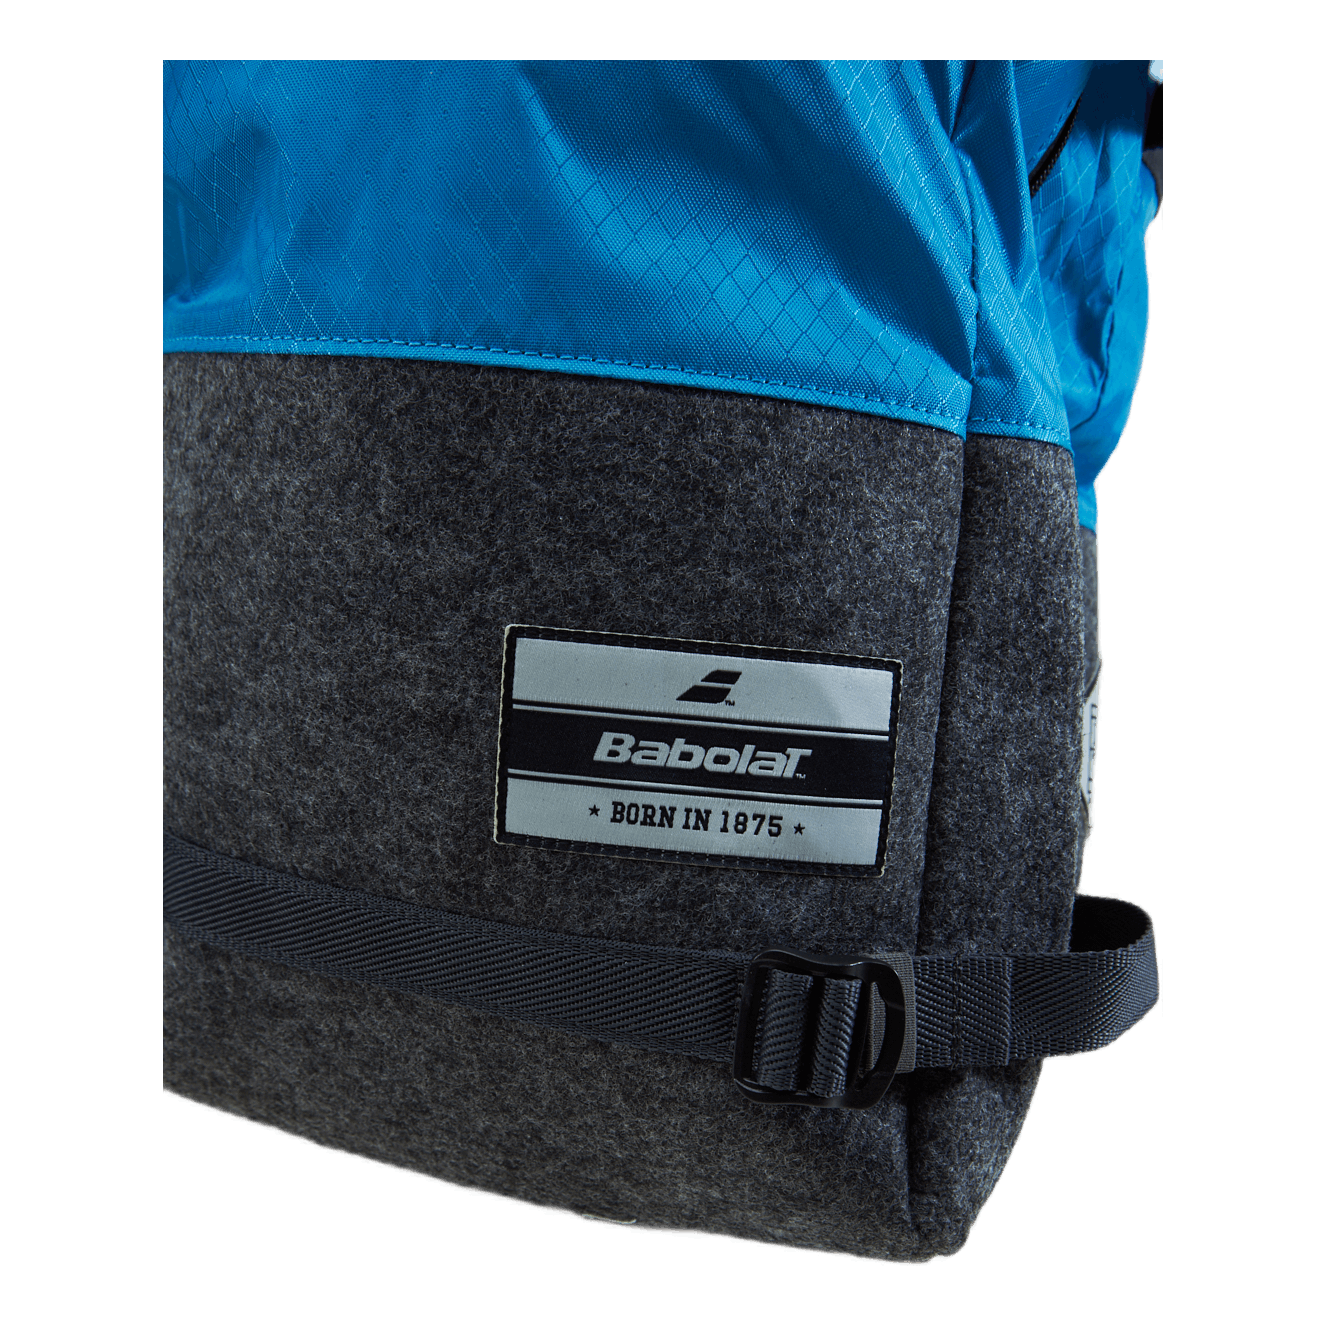 Backpack 3+3 Evo Blue